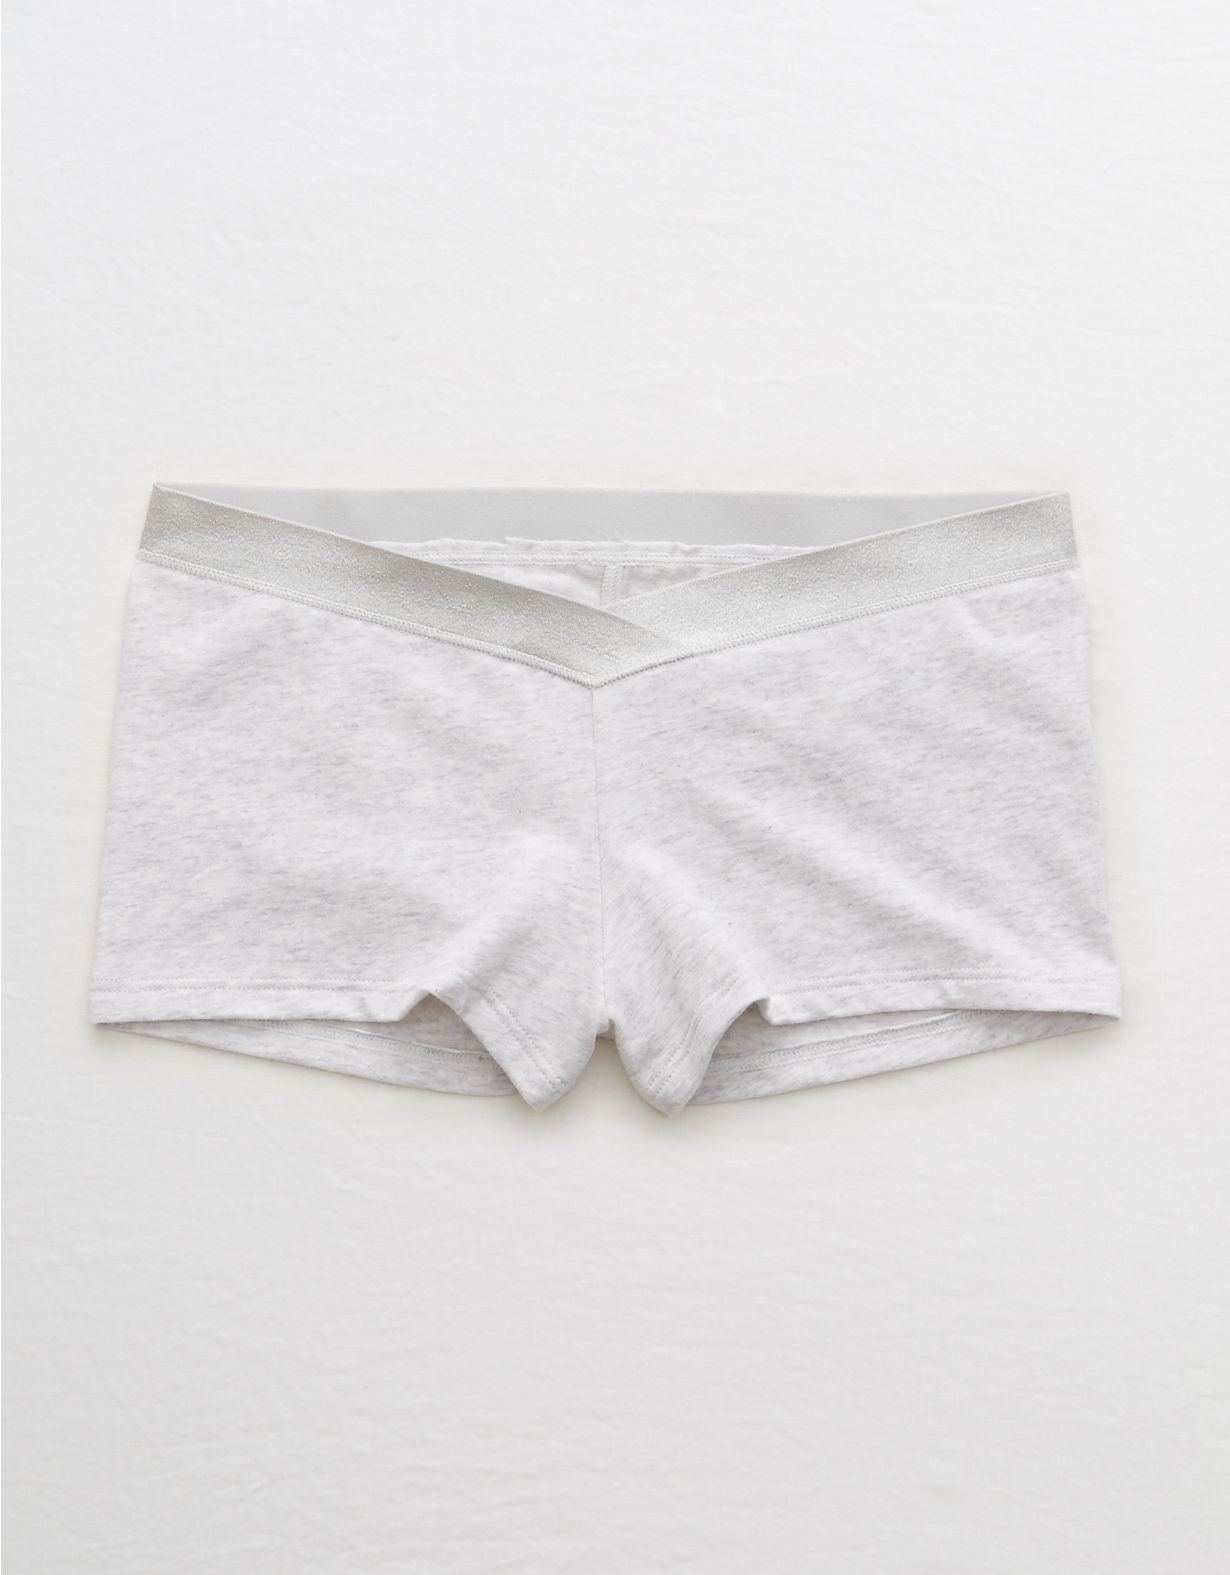 Aerie Cotton Boyshort Underwear